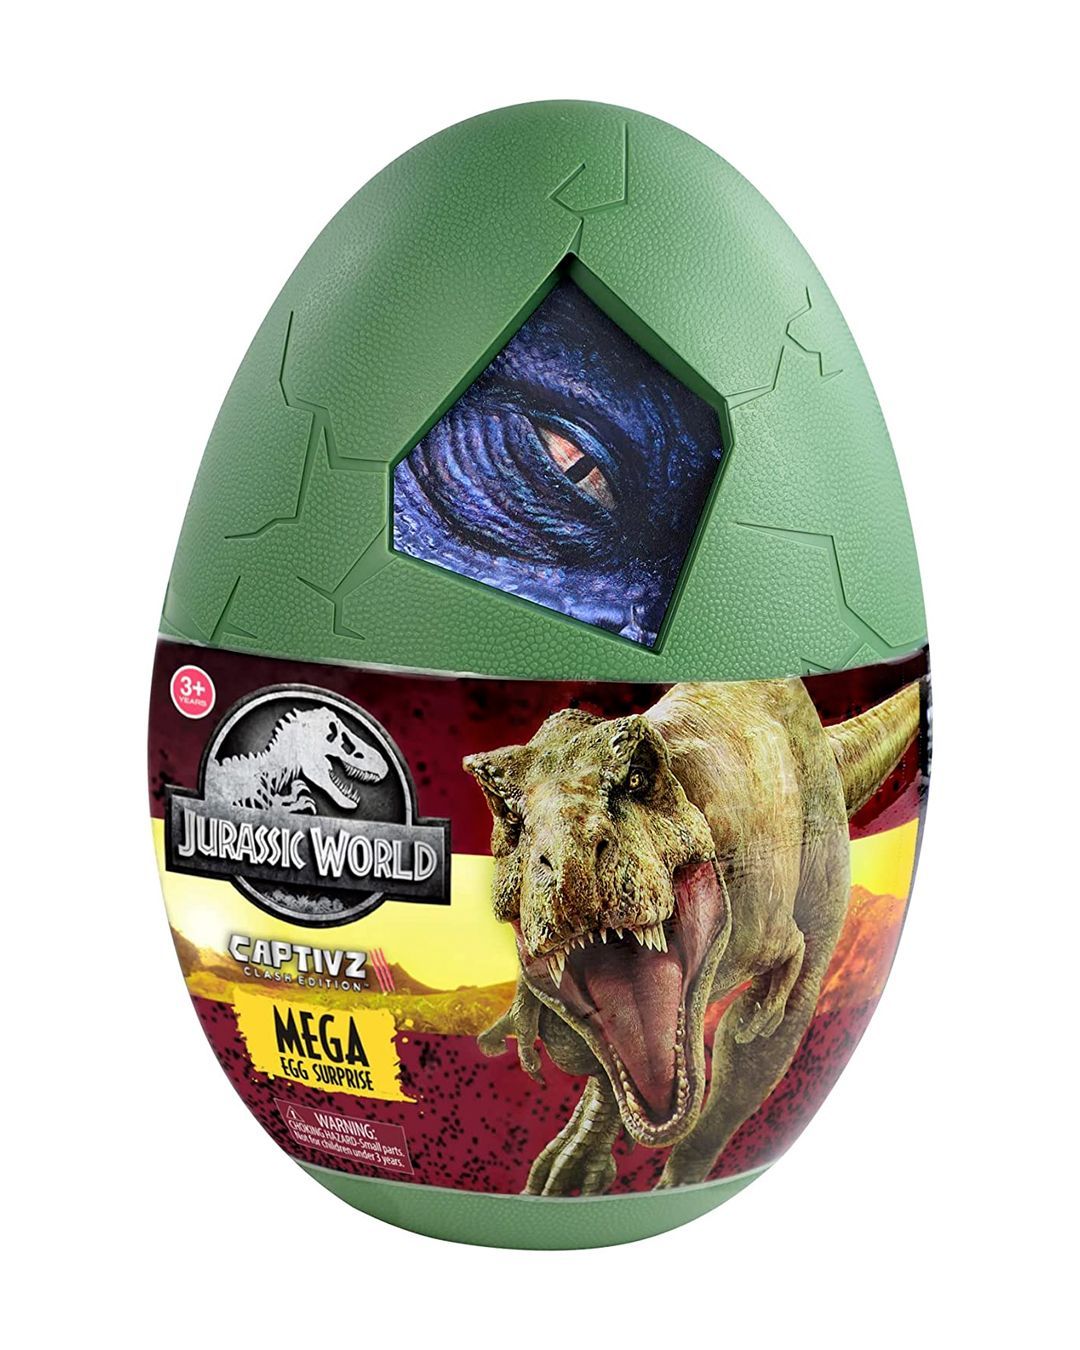 Jurassic World: Captivz Dominion Mega Egg